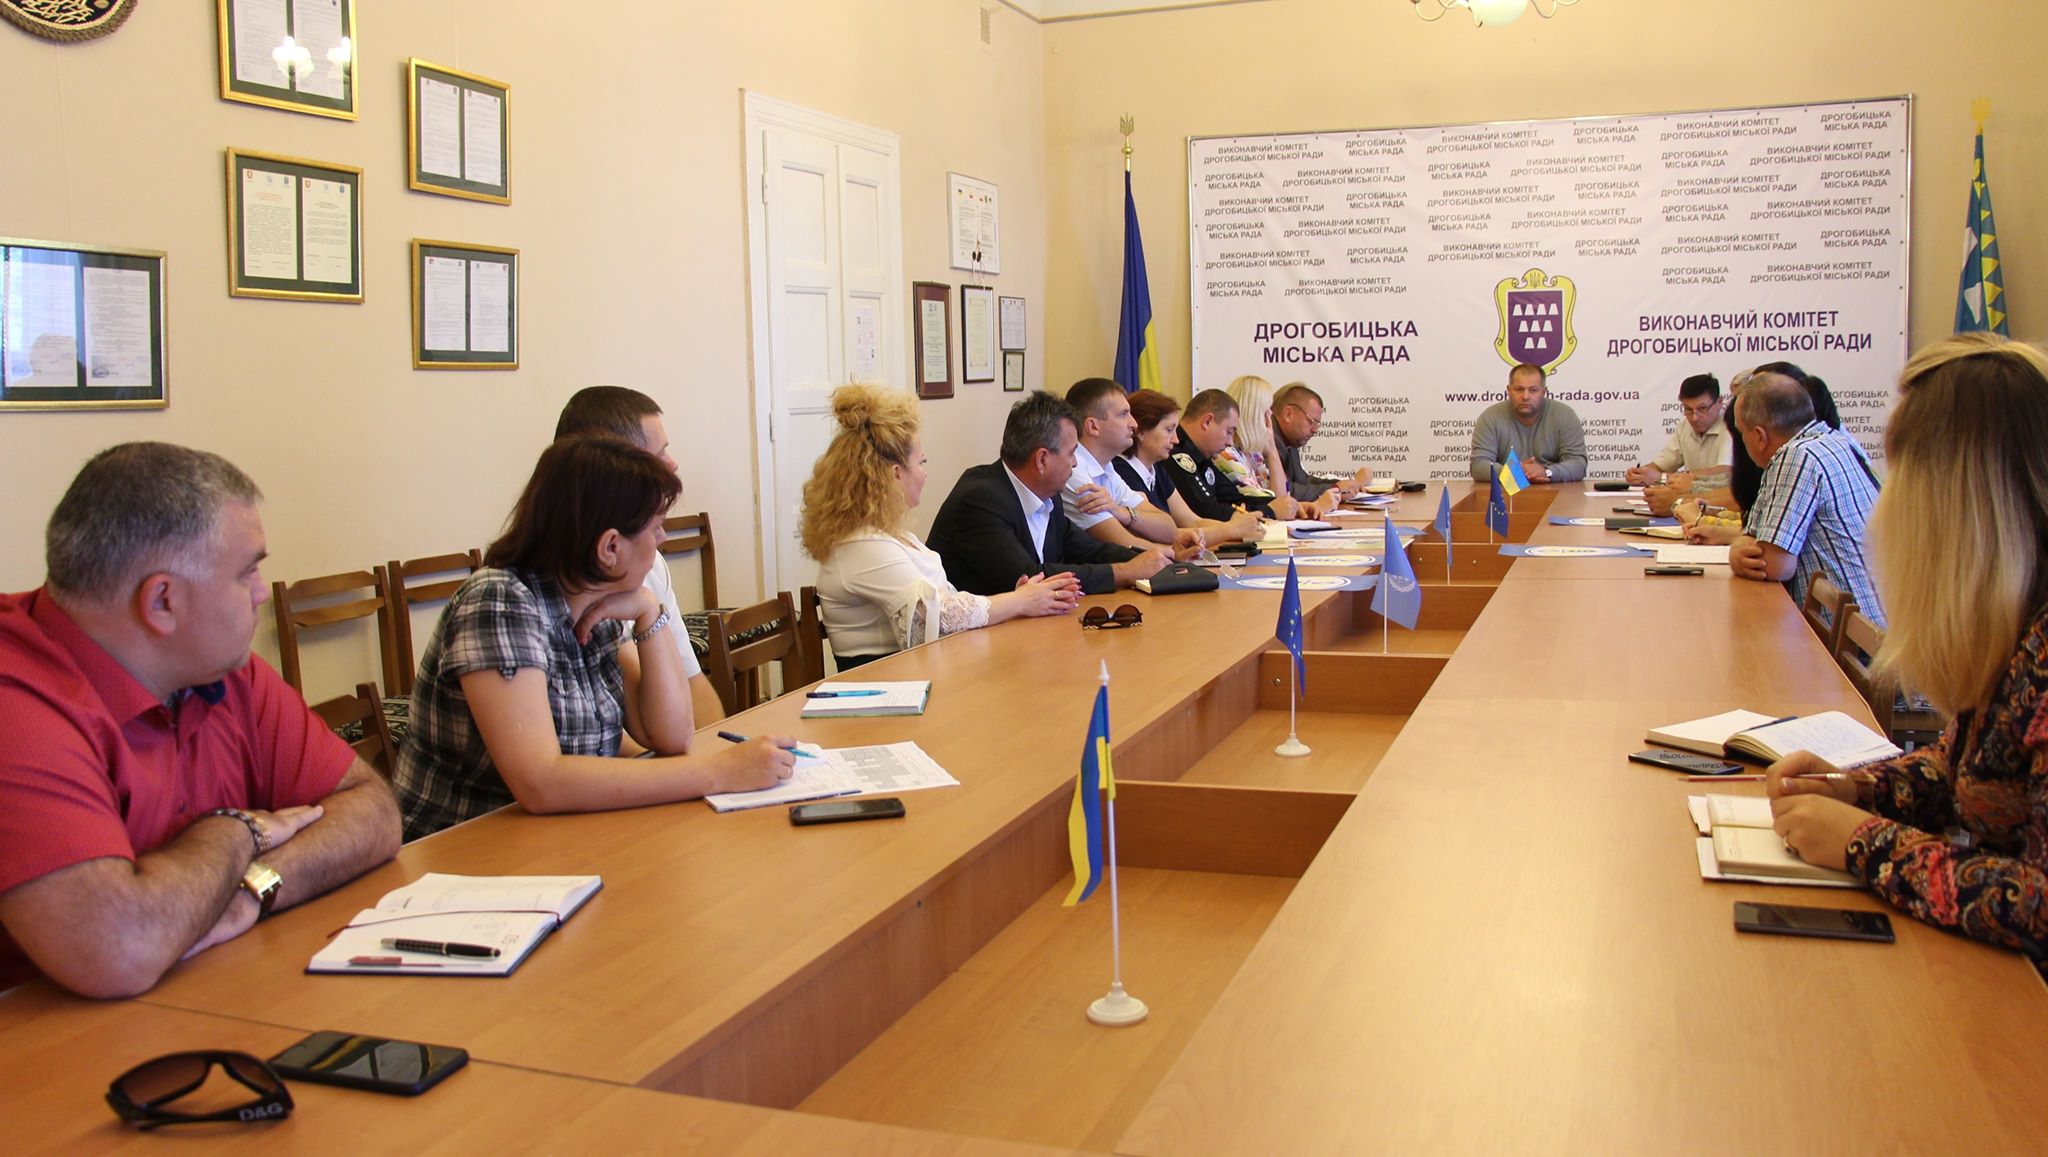 Цьогорічне відзначення Дня міста Дрогобича відбуватиметься на декількох локаціях в умовах мінімального бюджетного фінансування